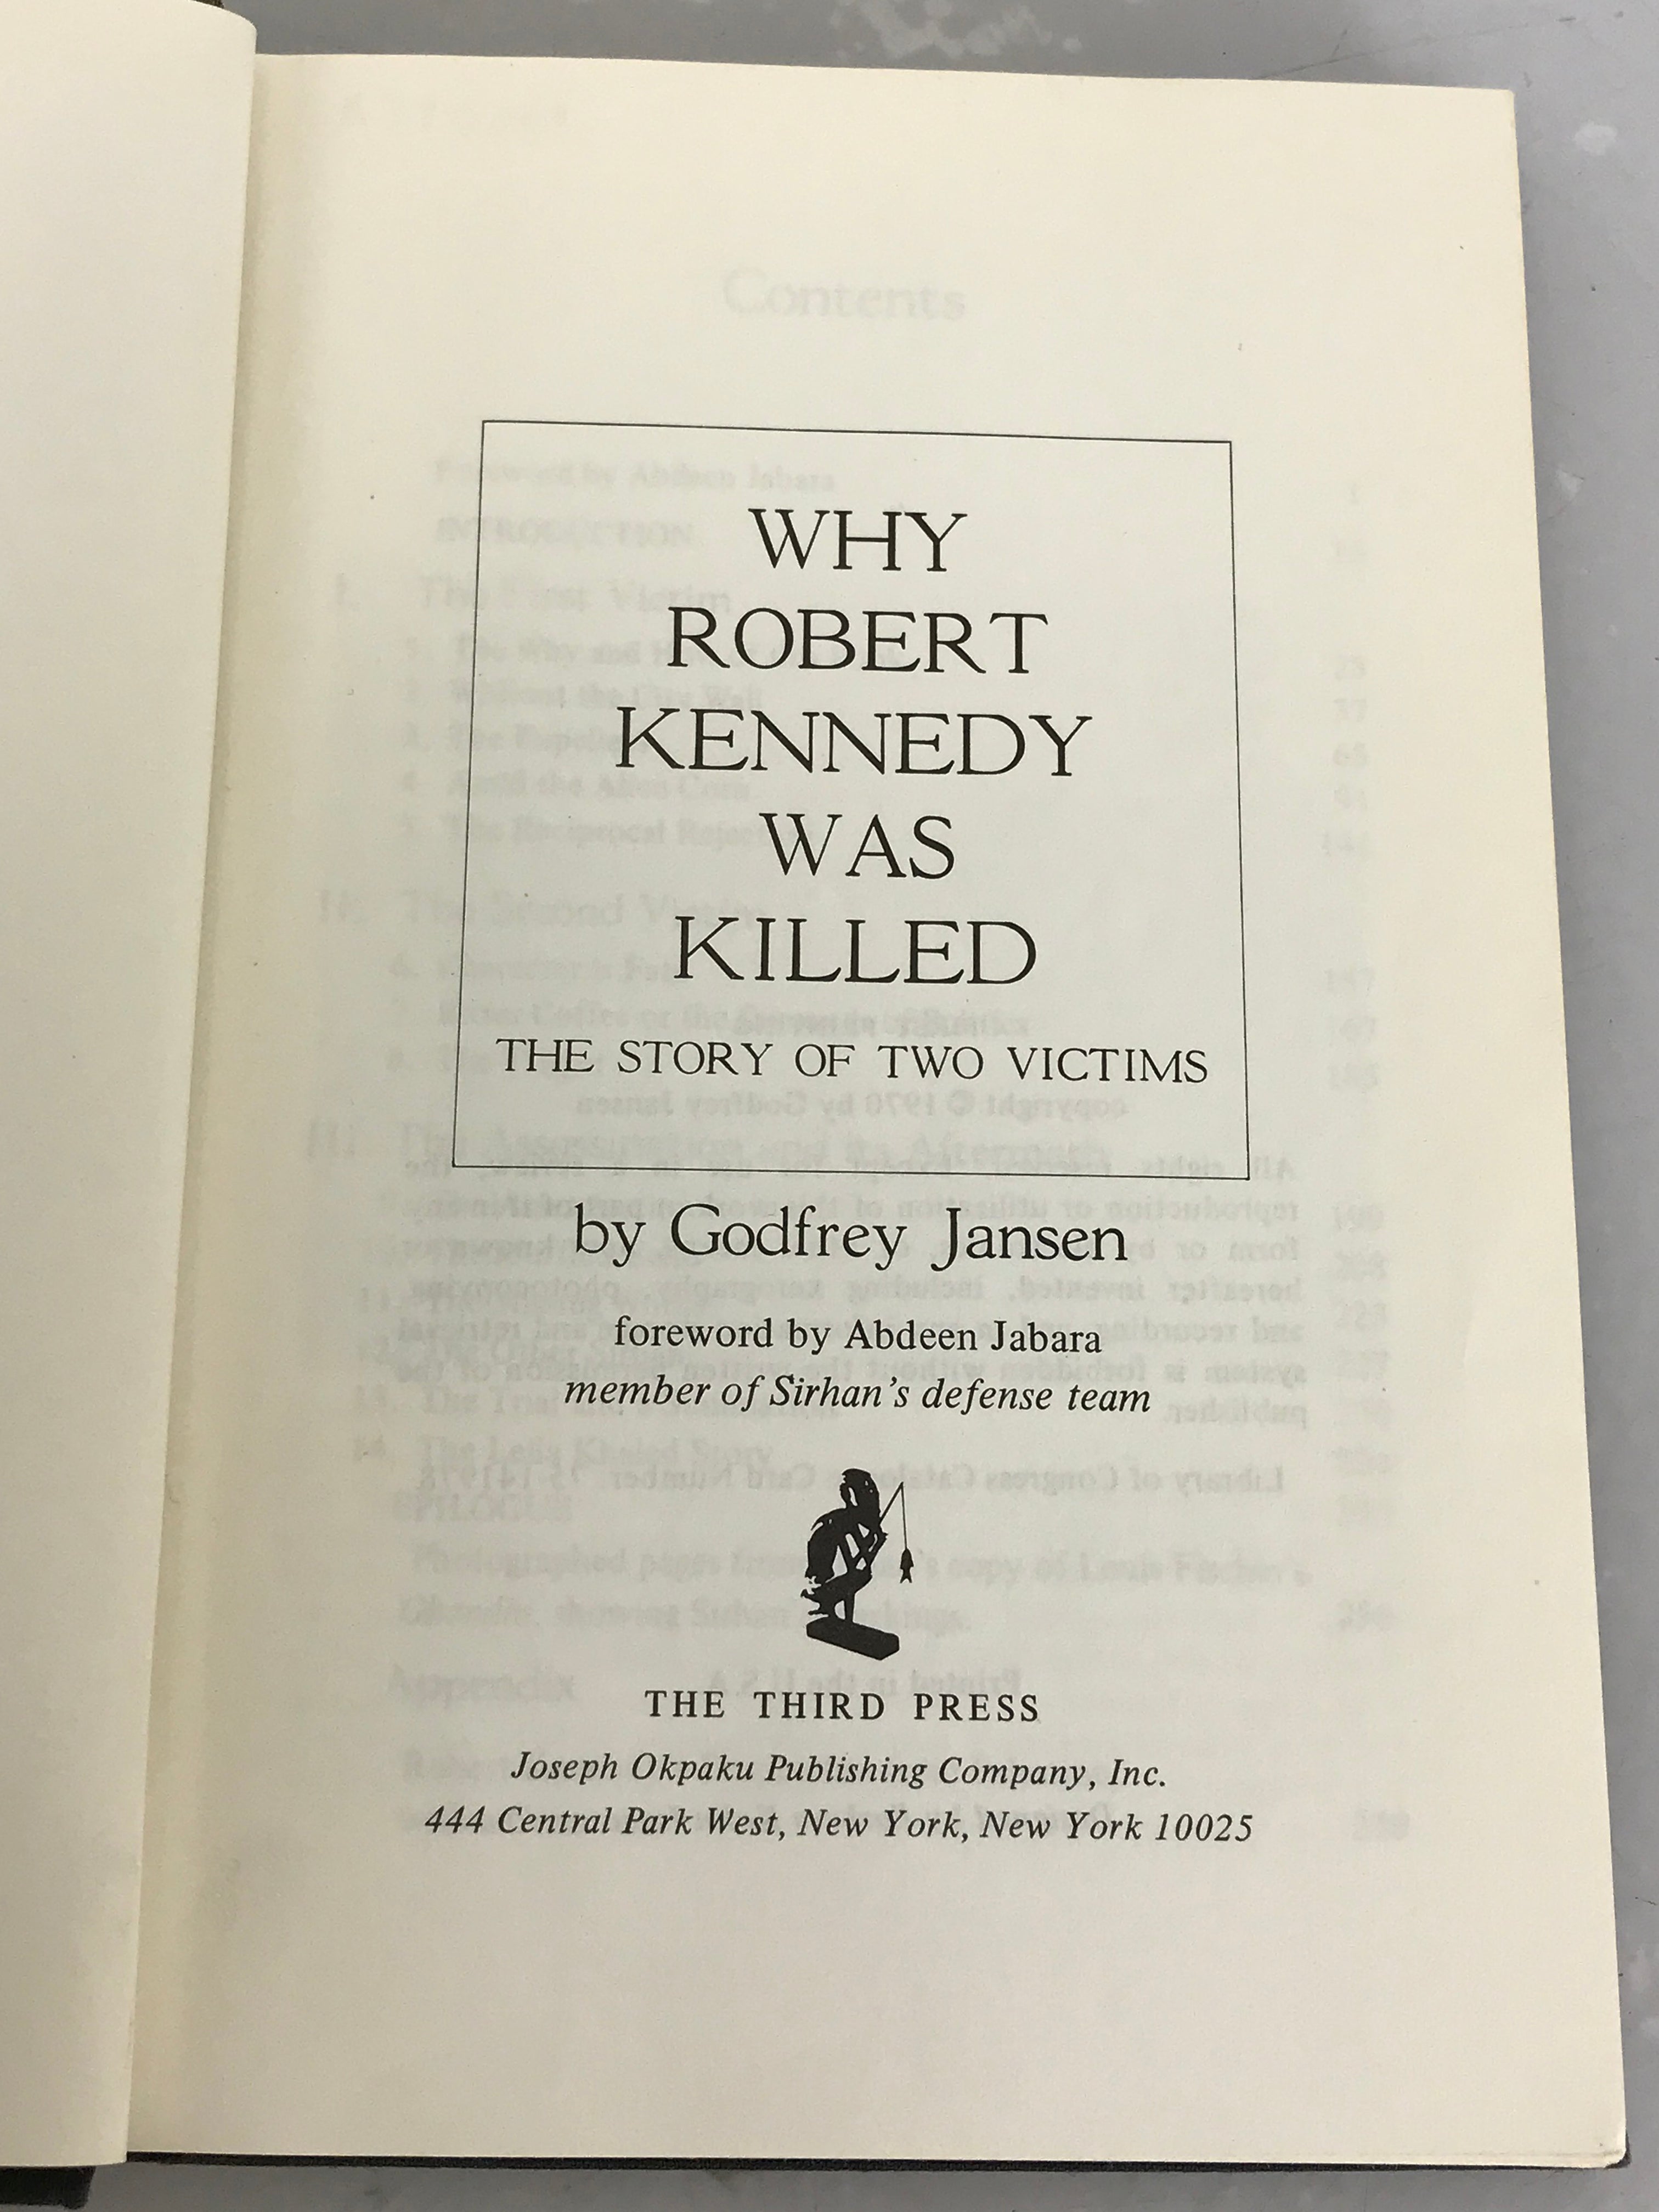 Lot of 2 Robert Kennedy: Robert Kennedy A Memoir (1969, 1st) and Why Robert Kennedy Was Killed (1970, 1st) HC